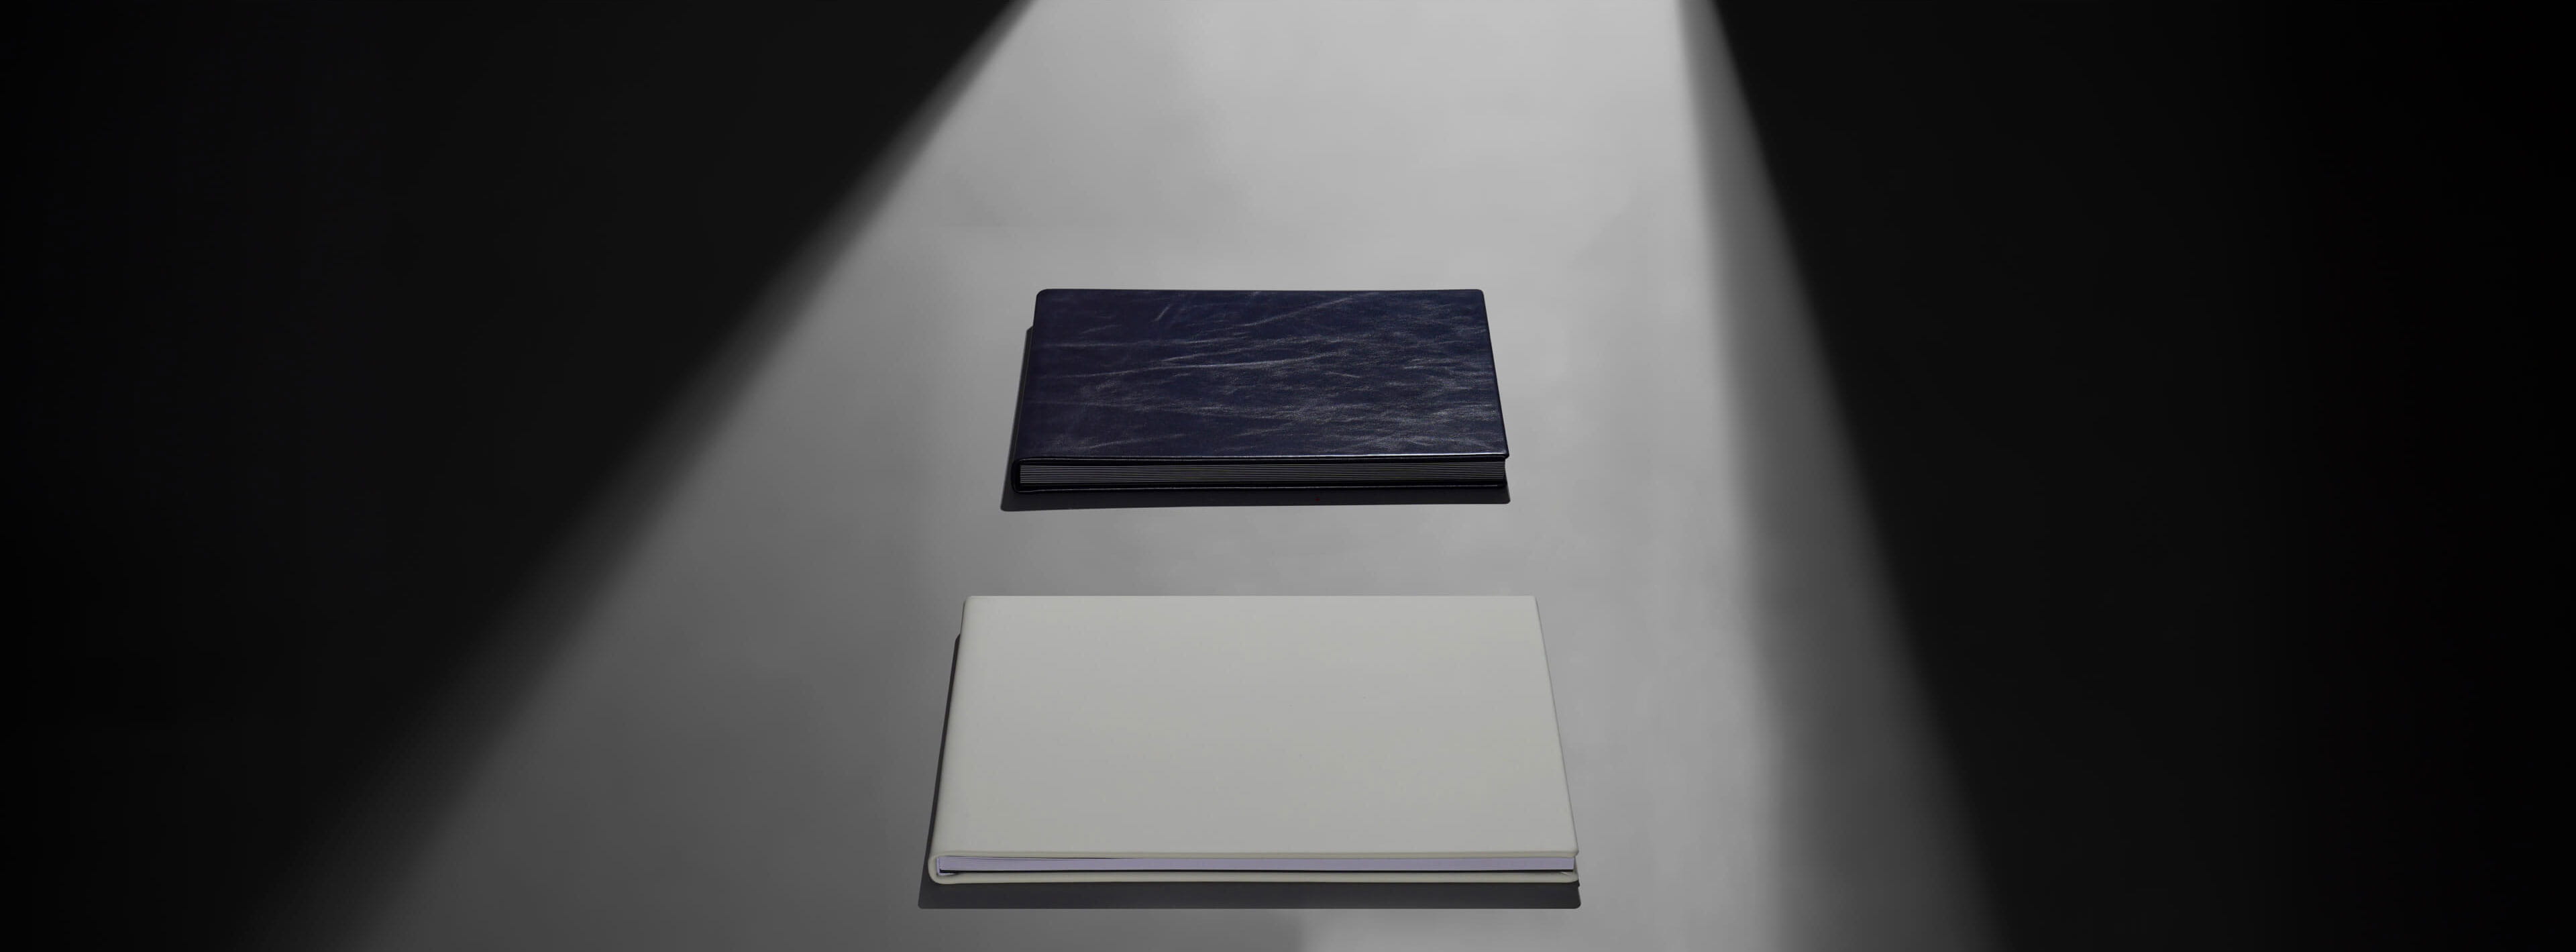 a white layflat photo book sitting next to a black flush mount album